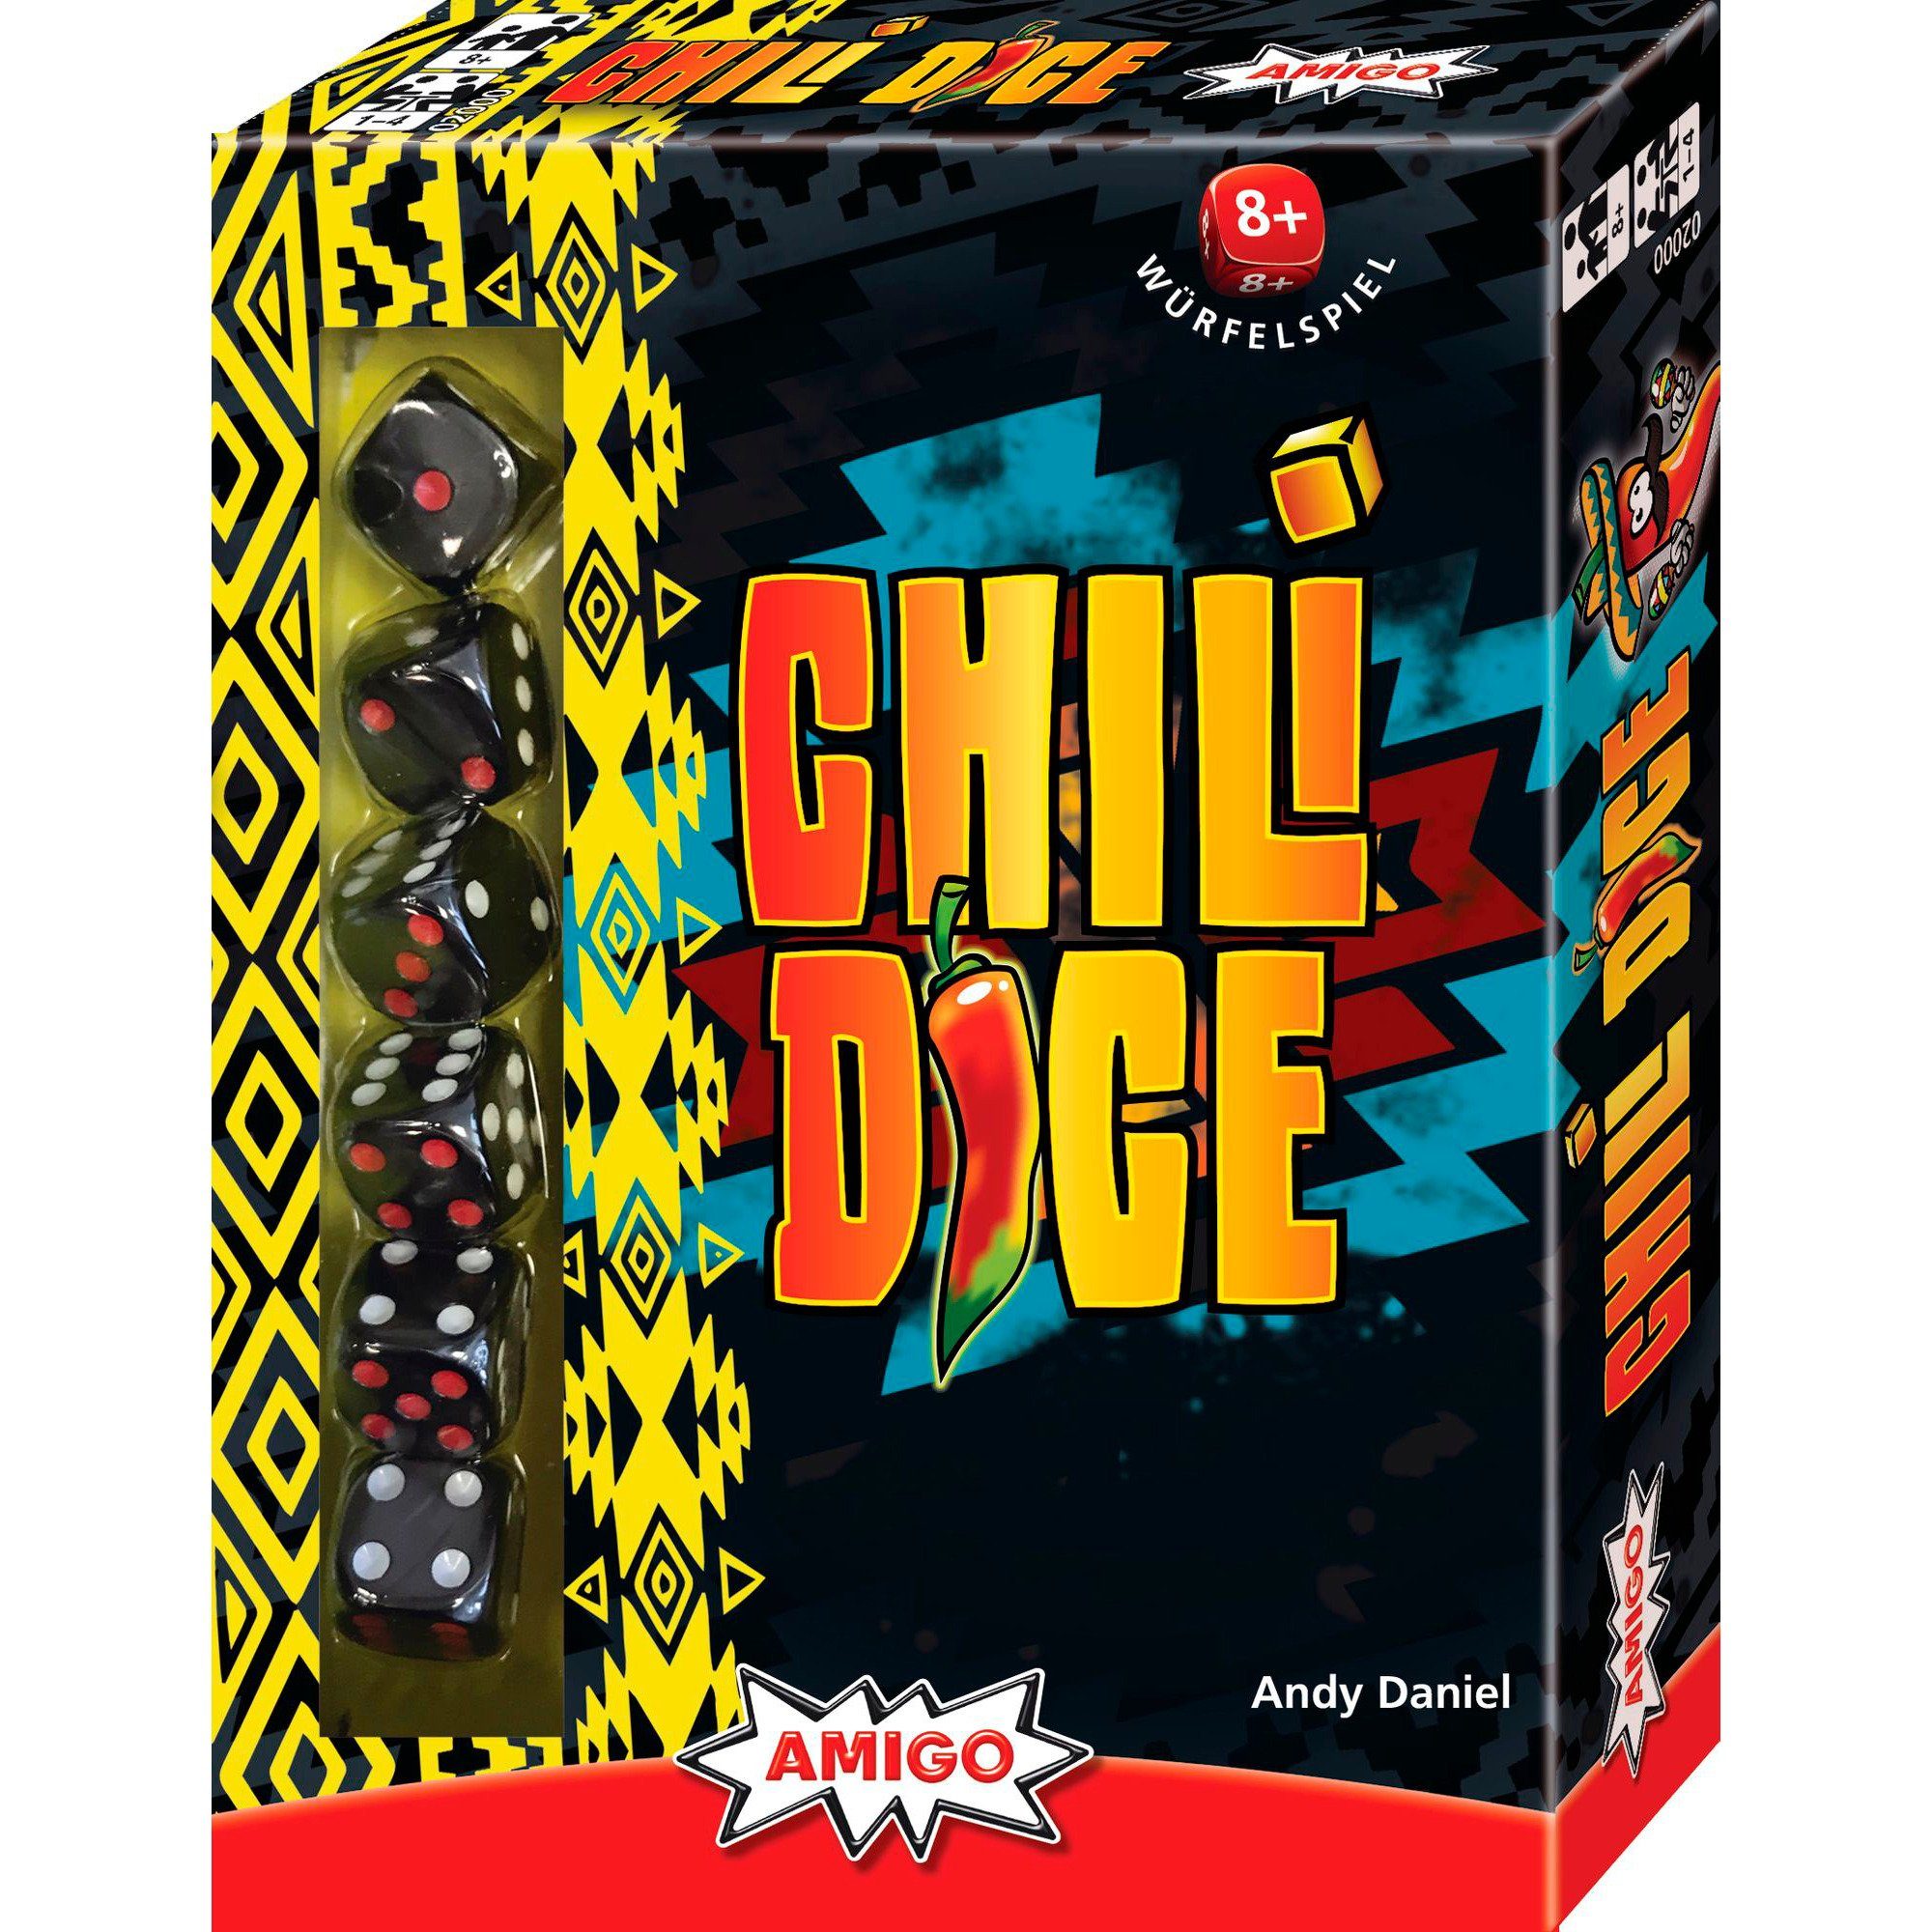 AMIGO Dice, Würfelspiel Amigo Spiel, Chili